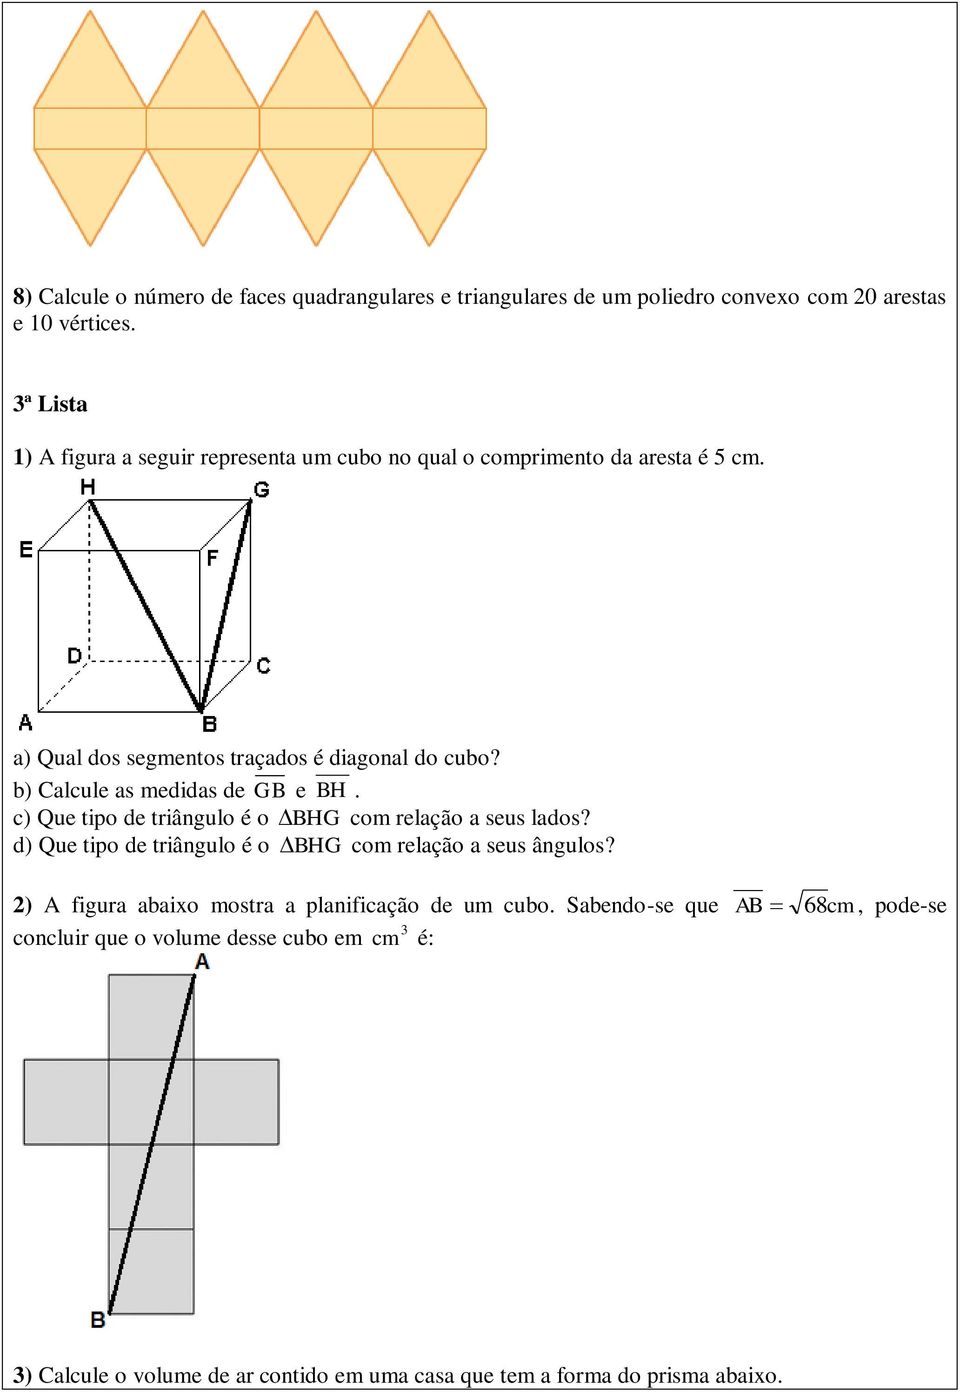 b) Calcule as medidas de GB e BH. c) Que tipo de triângulo é o BHG com relação a seus lados? d) Que tipo de triângulo é o BHG com relação a seus ângulos?